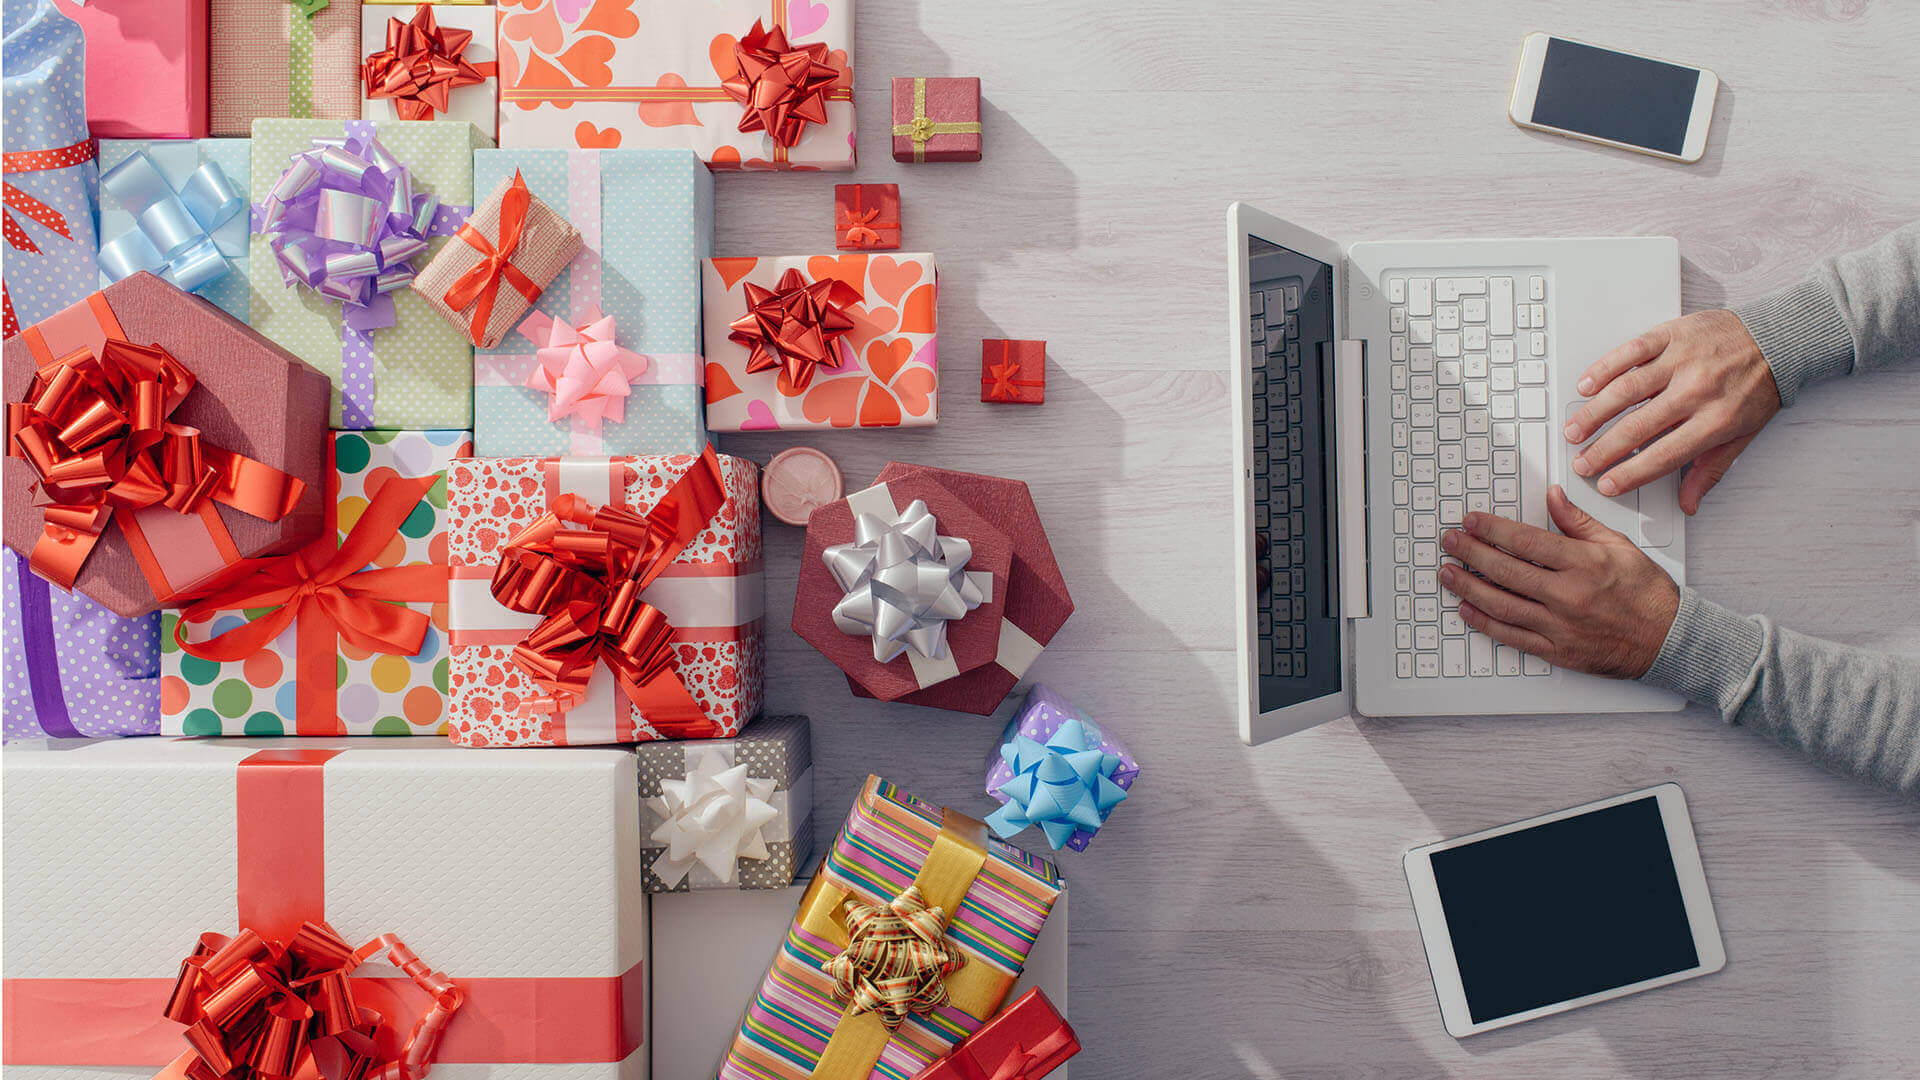 Los especialistas en marketing deben estar "siempre conectados" para las compras navideñas